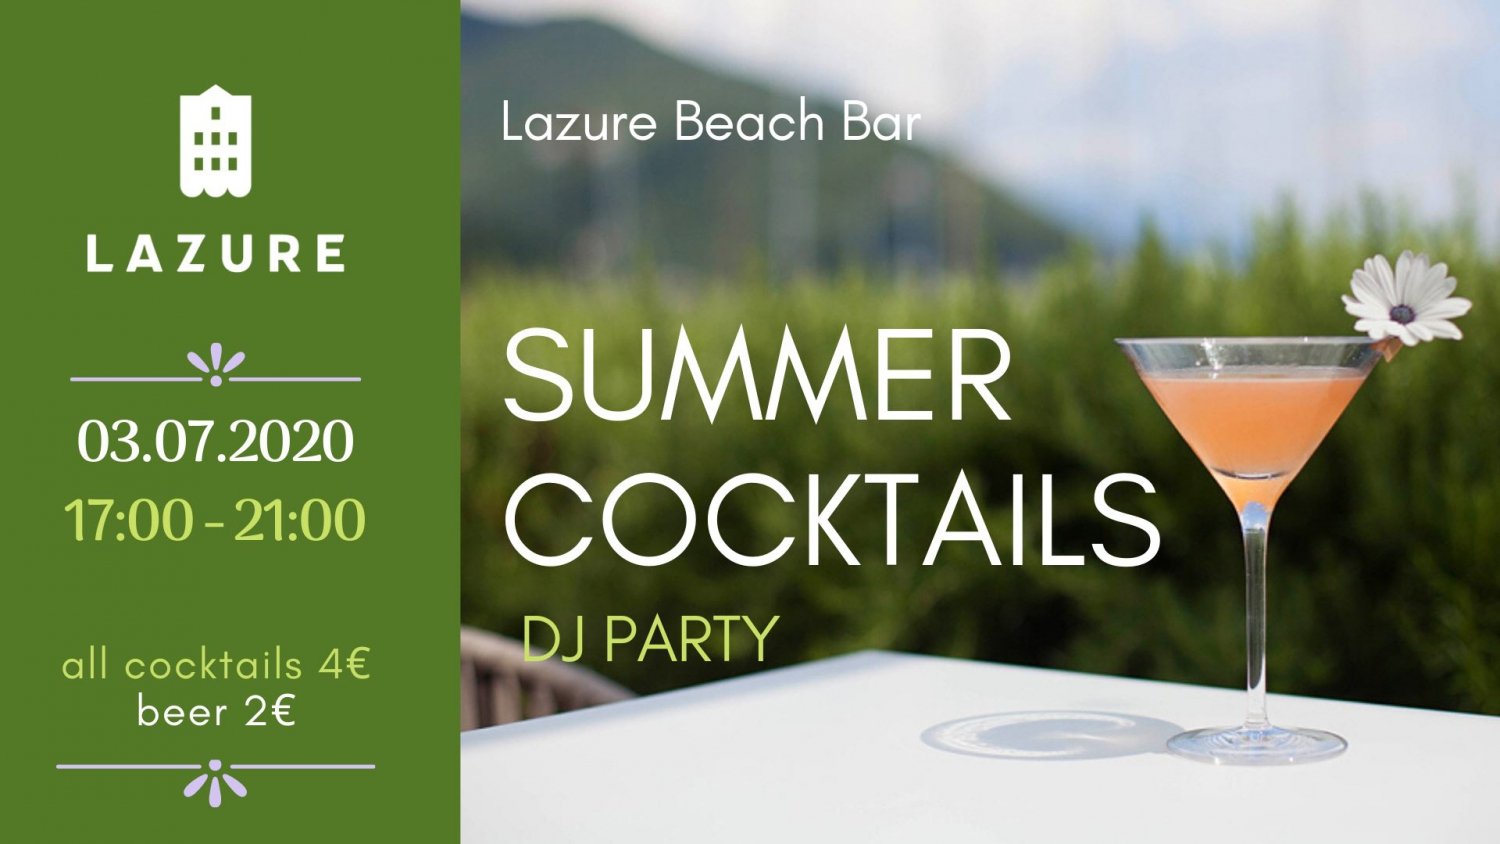 Summer Cocktails DJ Party at Lazure